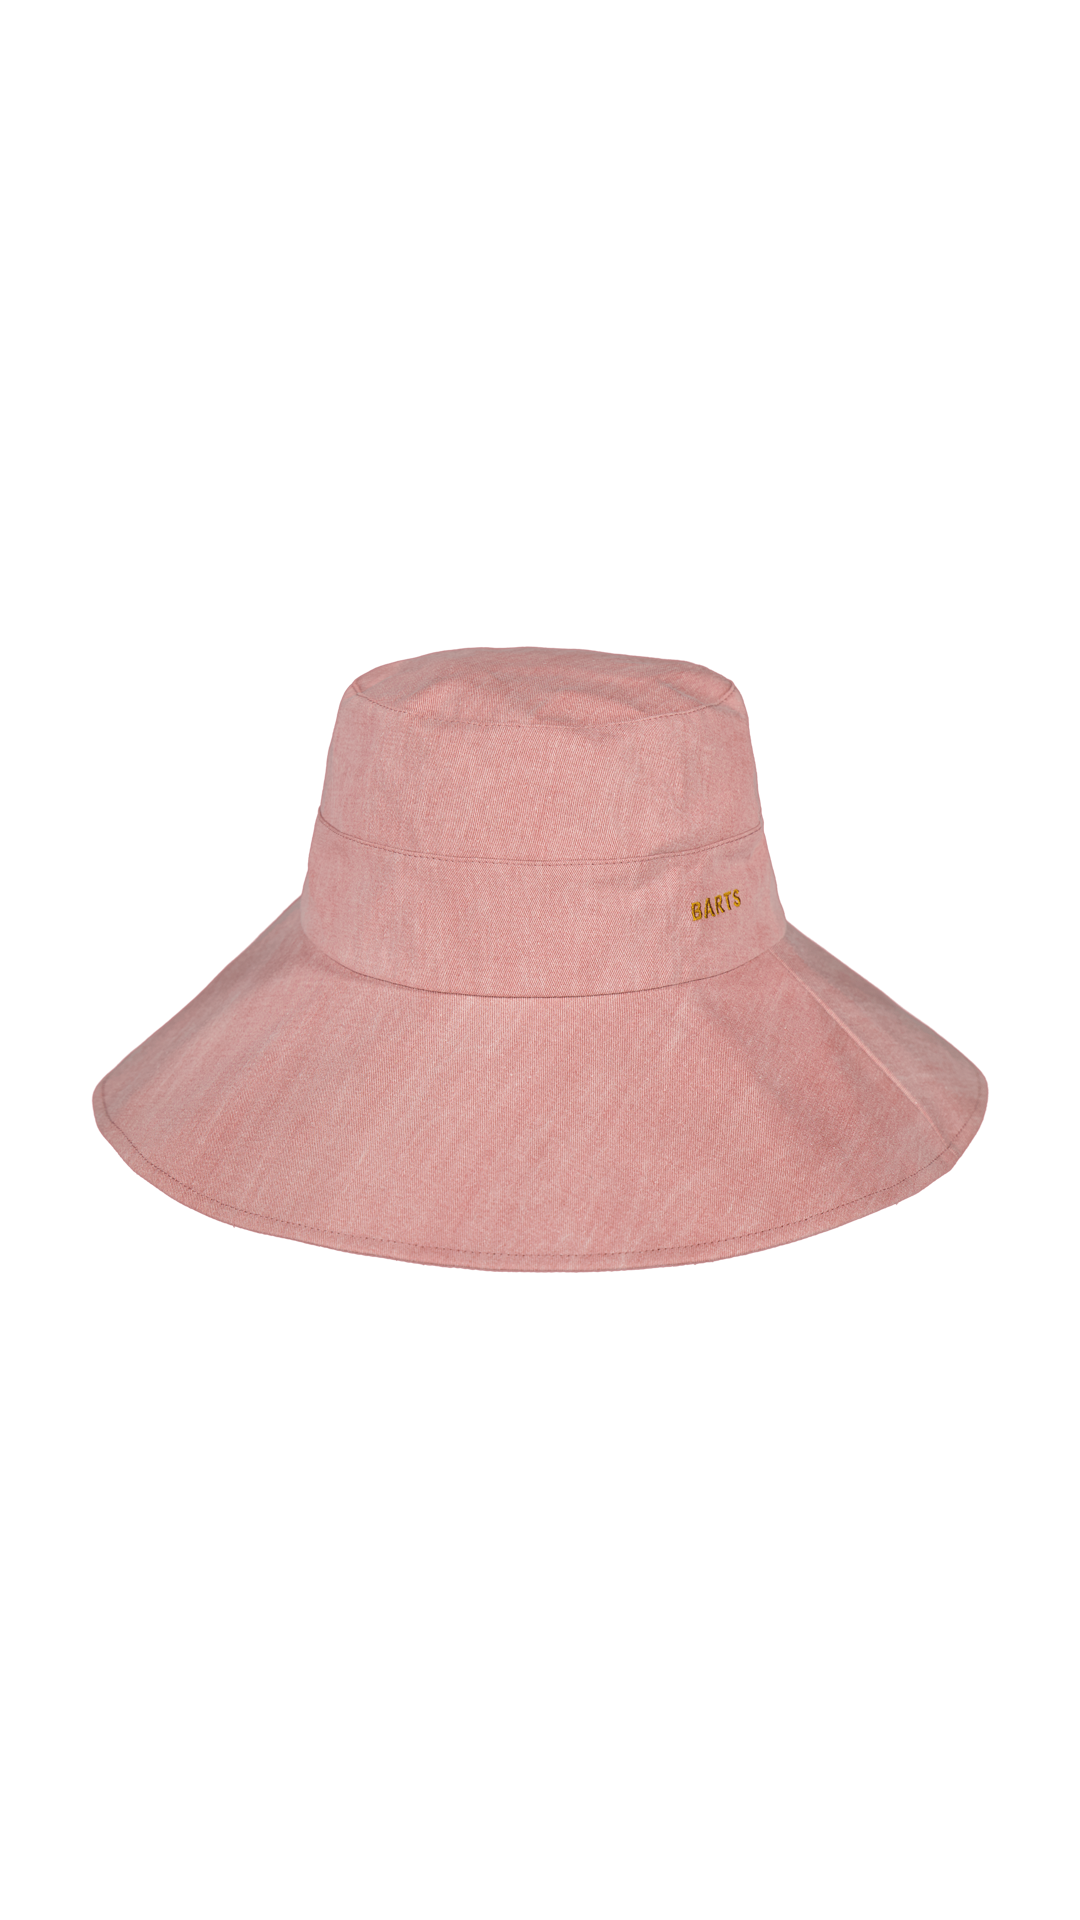 BARTS Hamutan pink Hat now - Order BARTS at